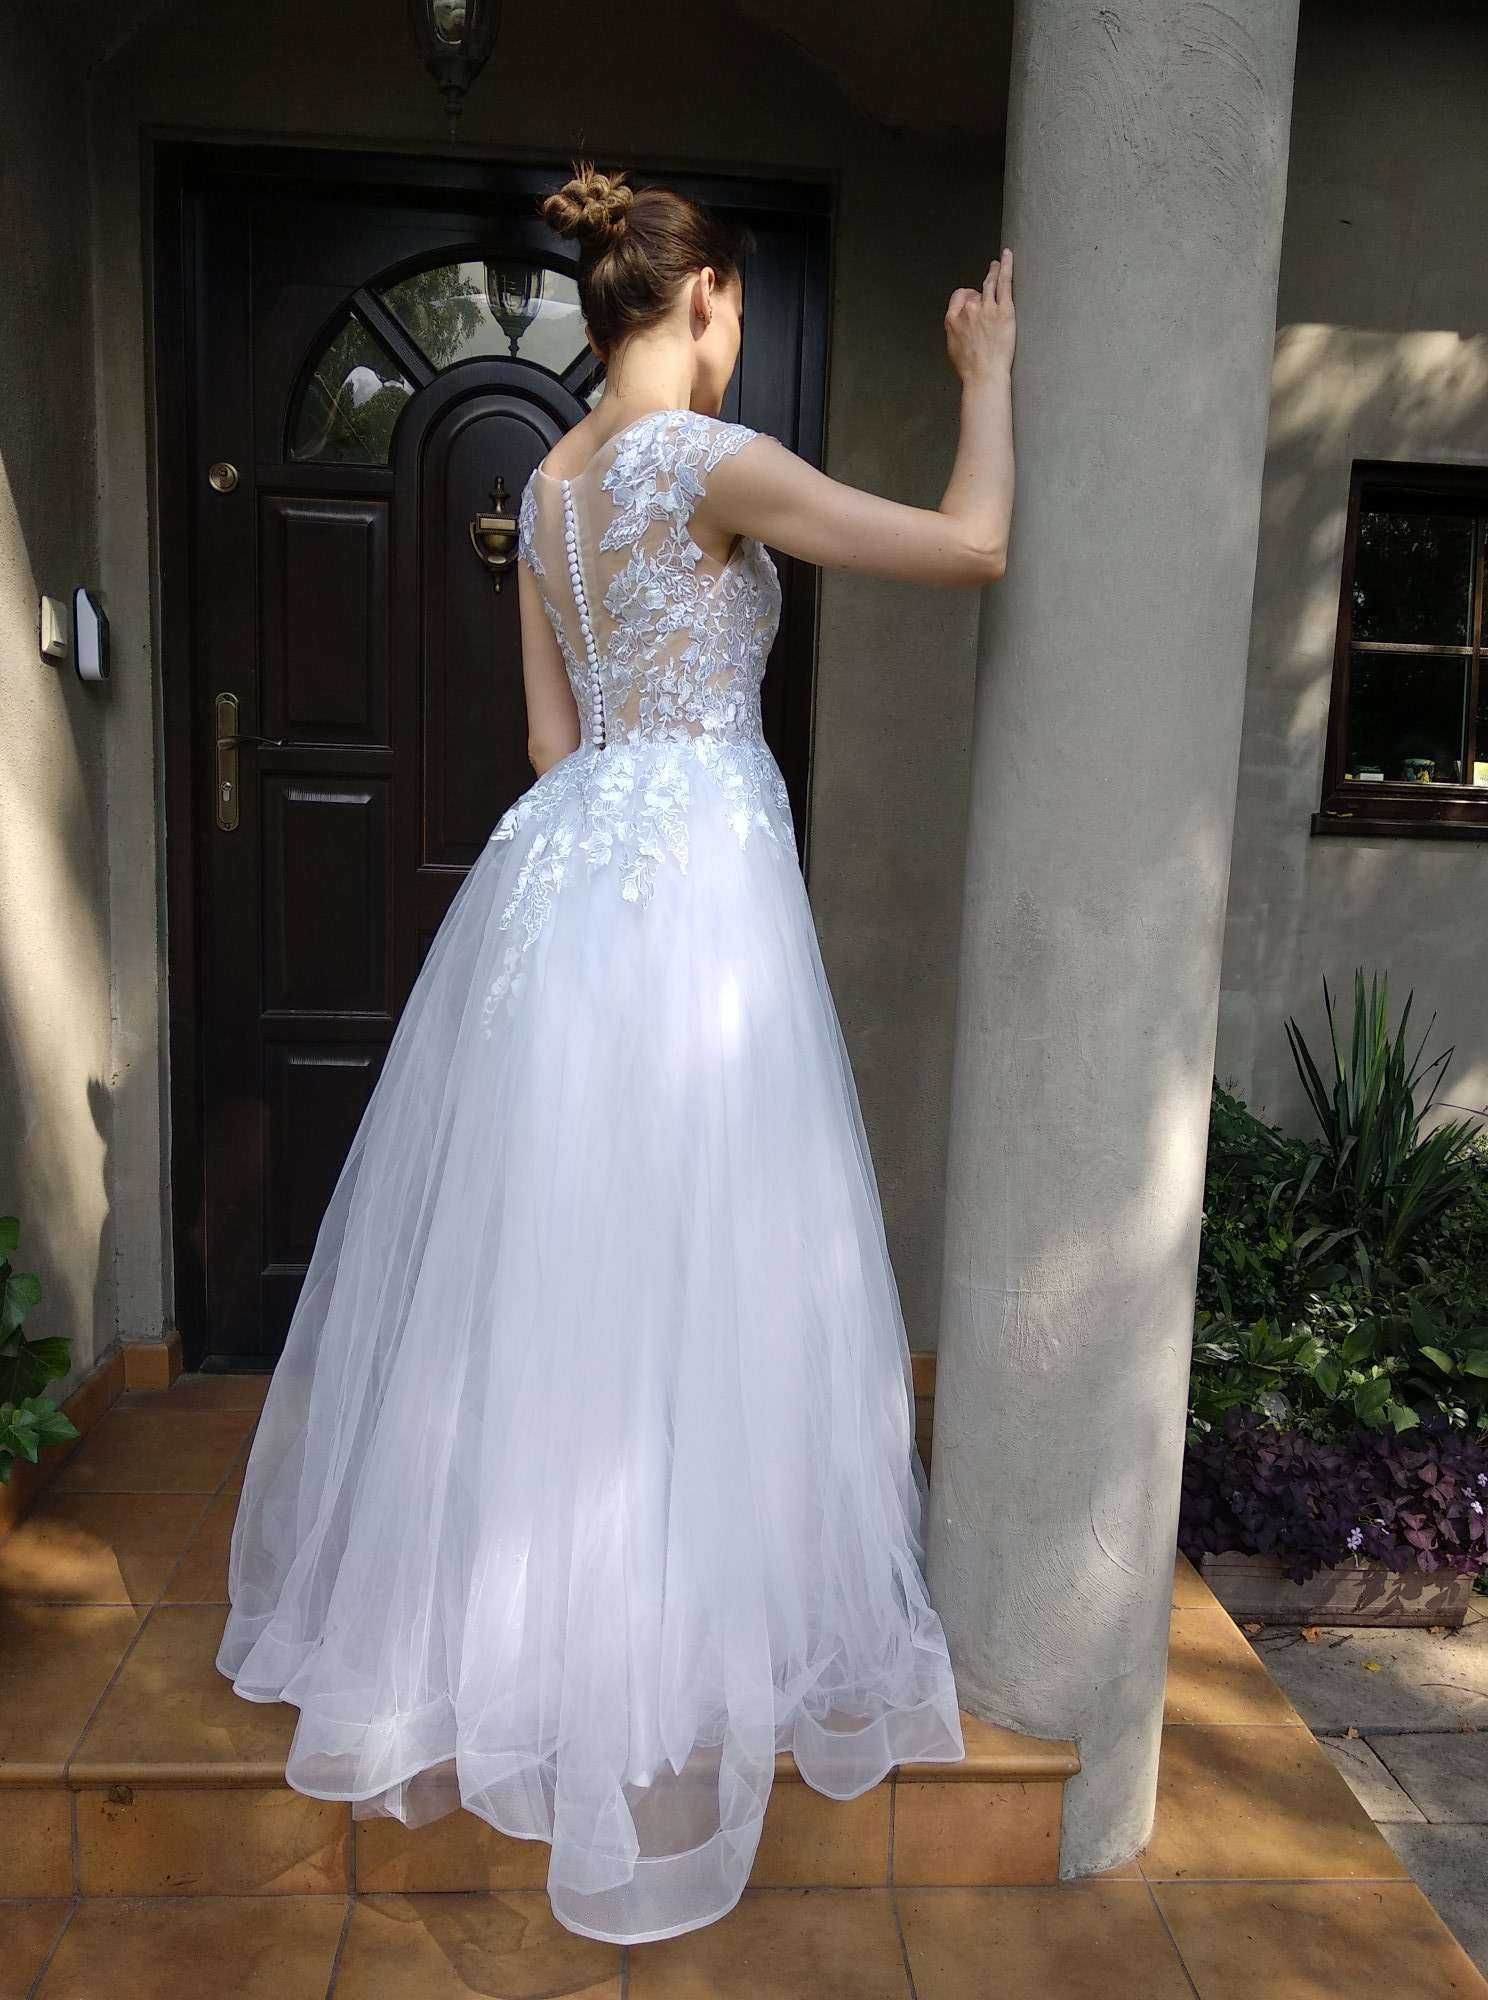 Piękna całkiem nowa suknia ślubna rozmiar 38